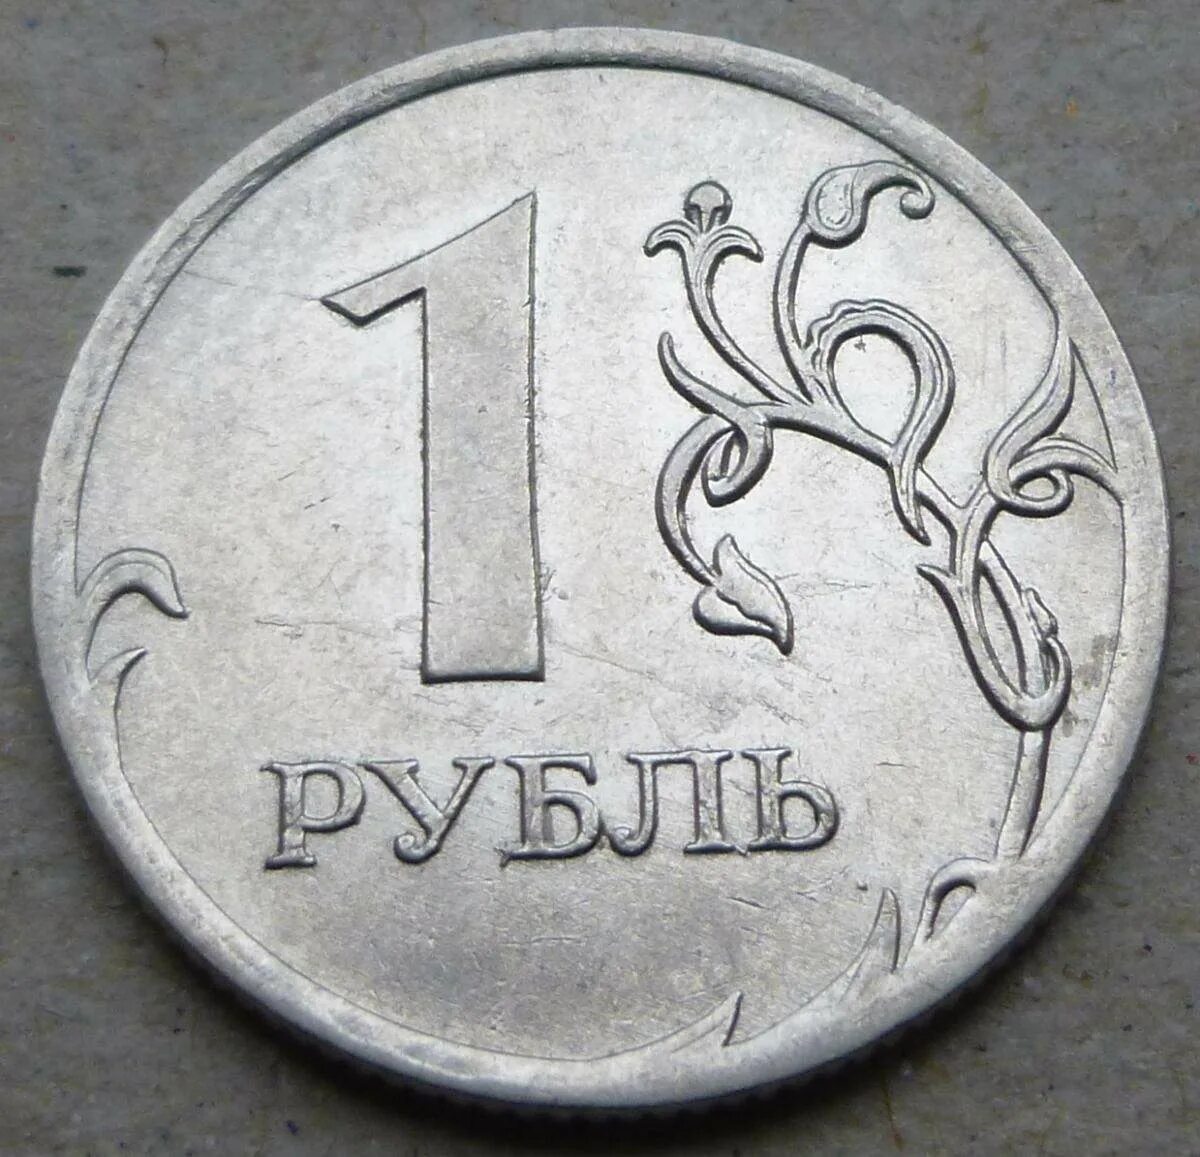 Просто рубль. 1 Рубль. Монеты рубли. Монета достоинством 1 рубль. Изображение монеты 1 рубль.